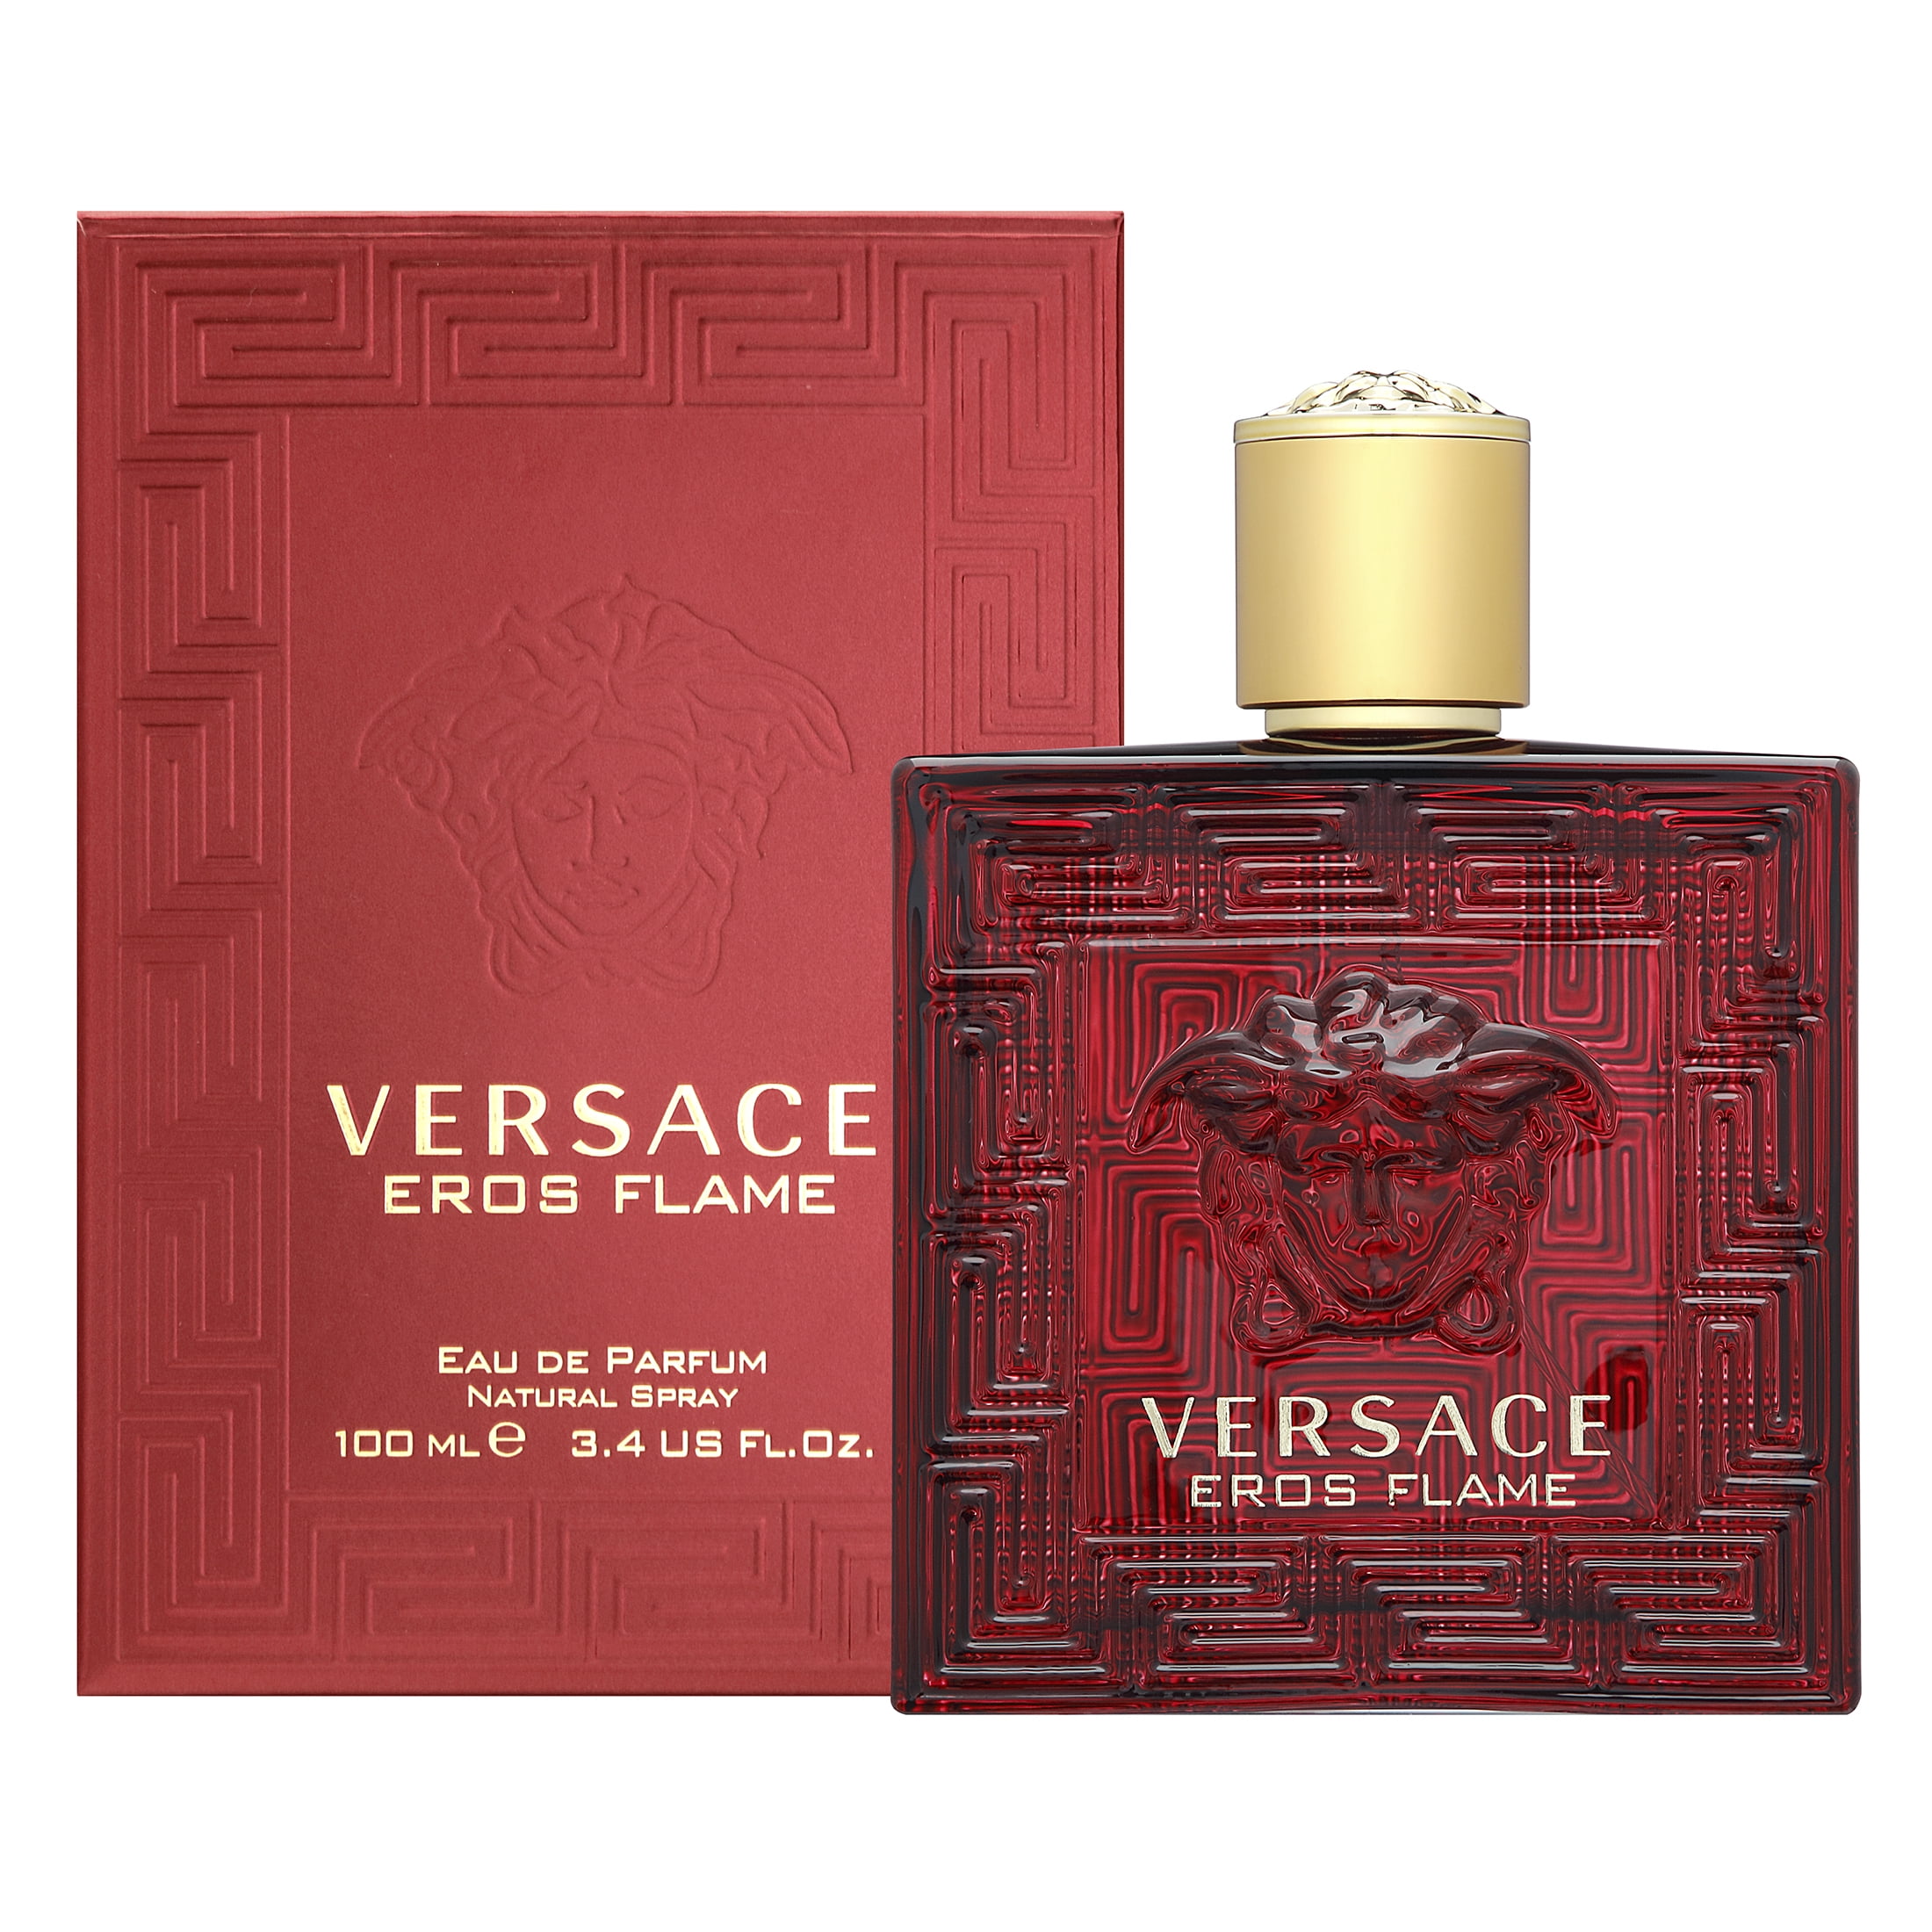 Версаче флейм. Eros Flame Versace 100 мл. Versace Eros Flame Parfum. Versace Eros Flame 100ml. Versace Eros Flame EDP, 100 ml (Luxe евро).